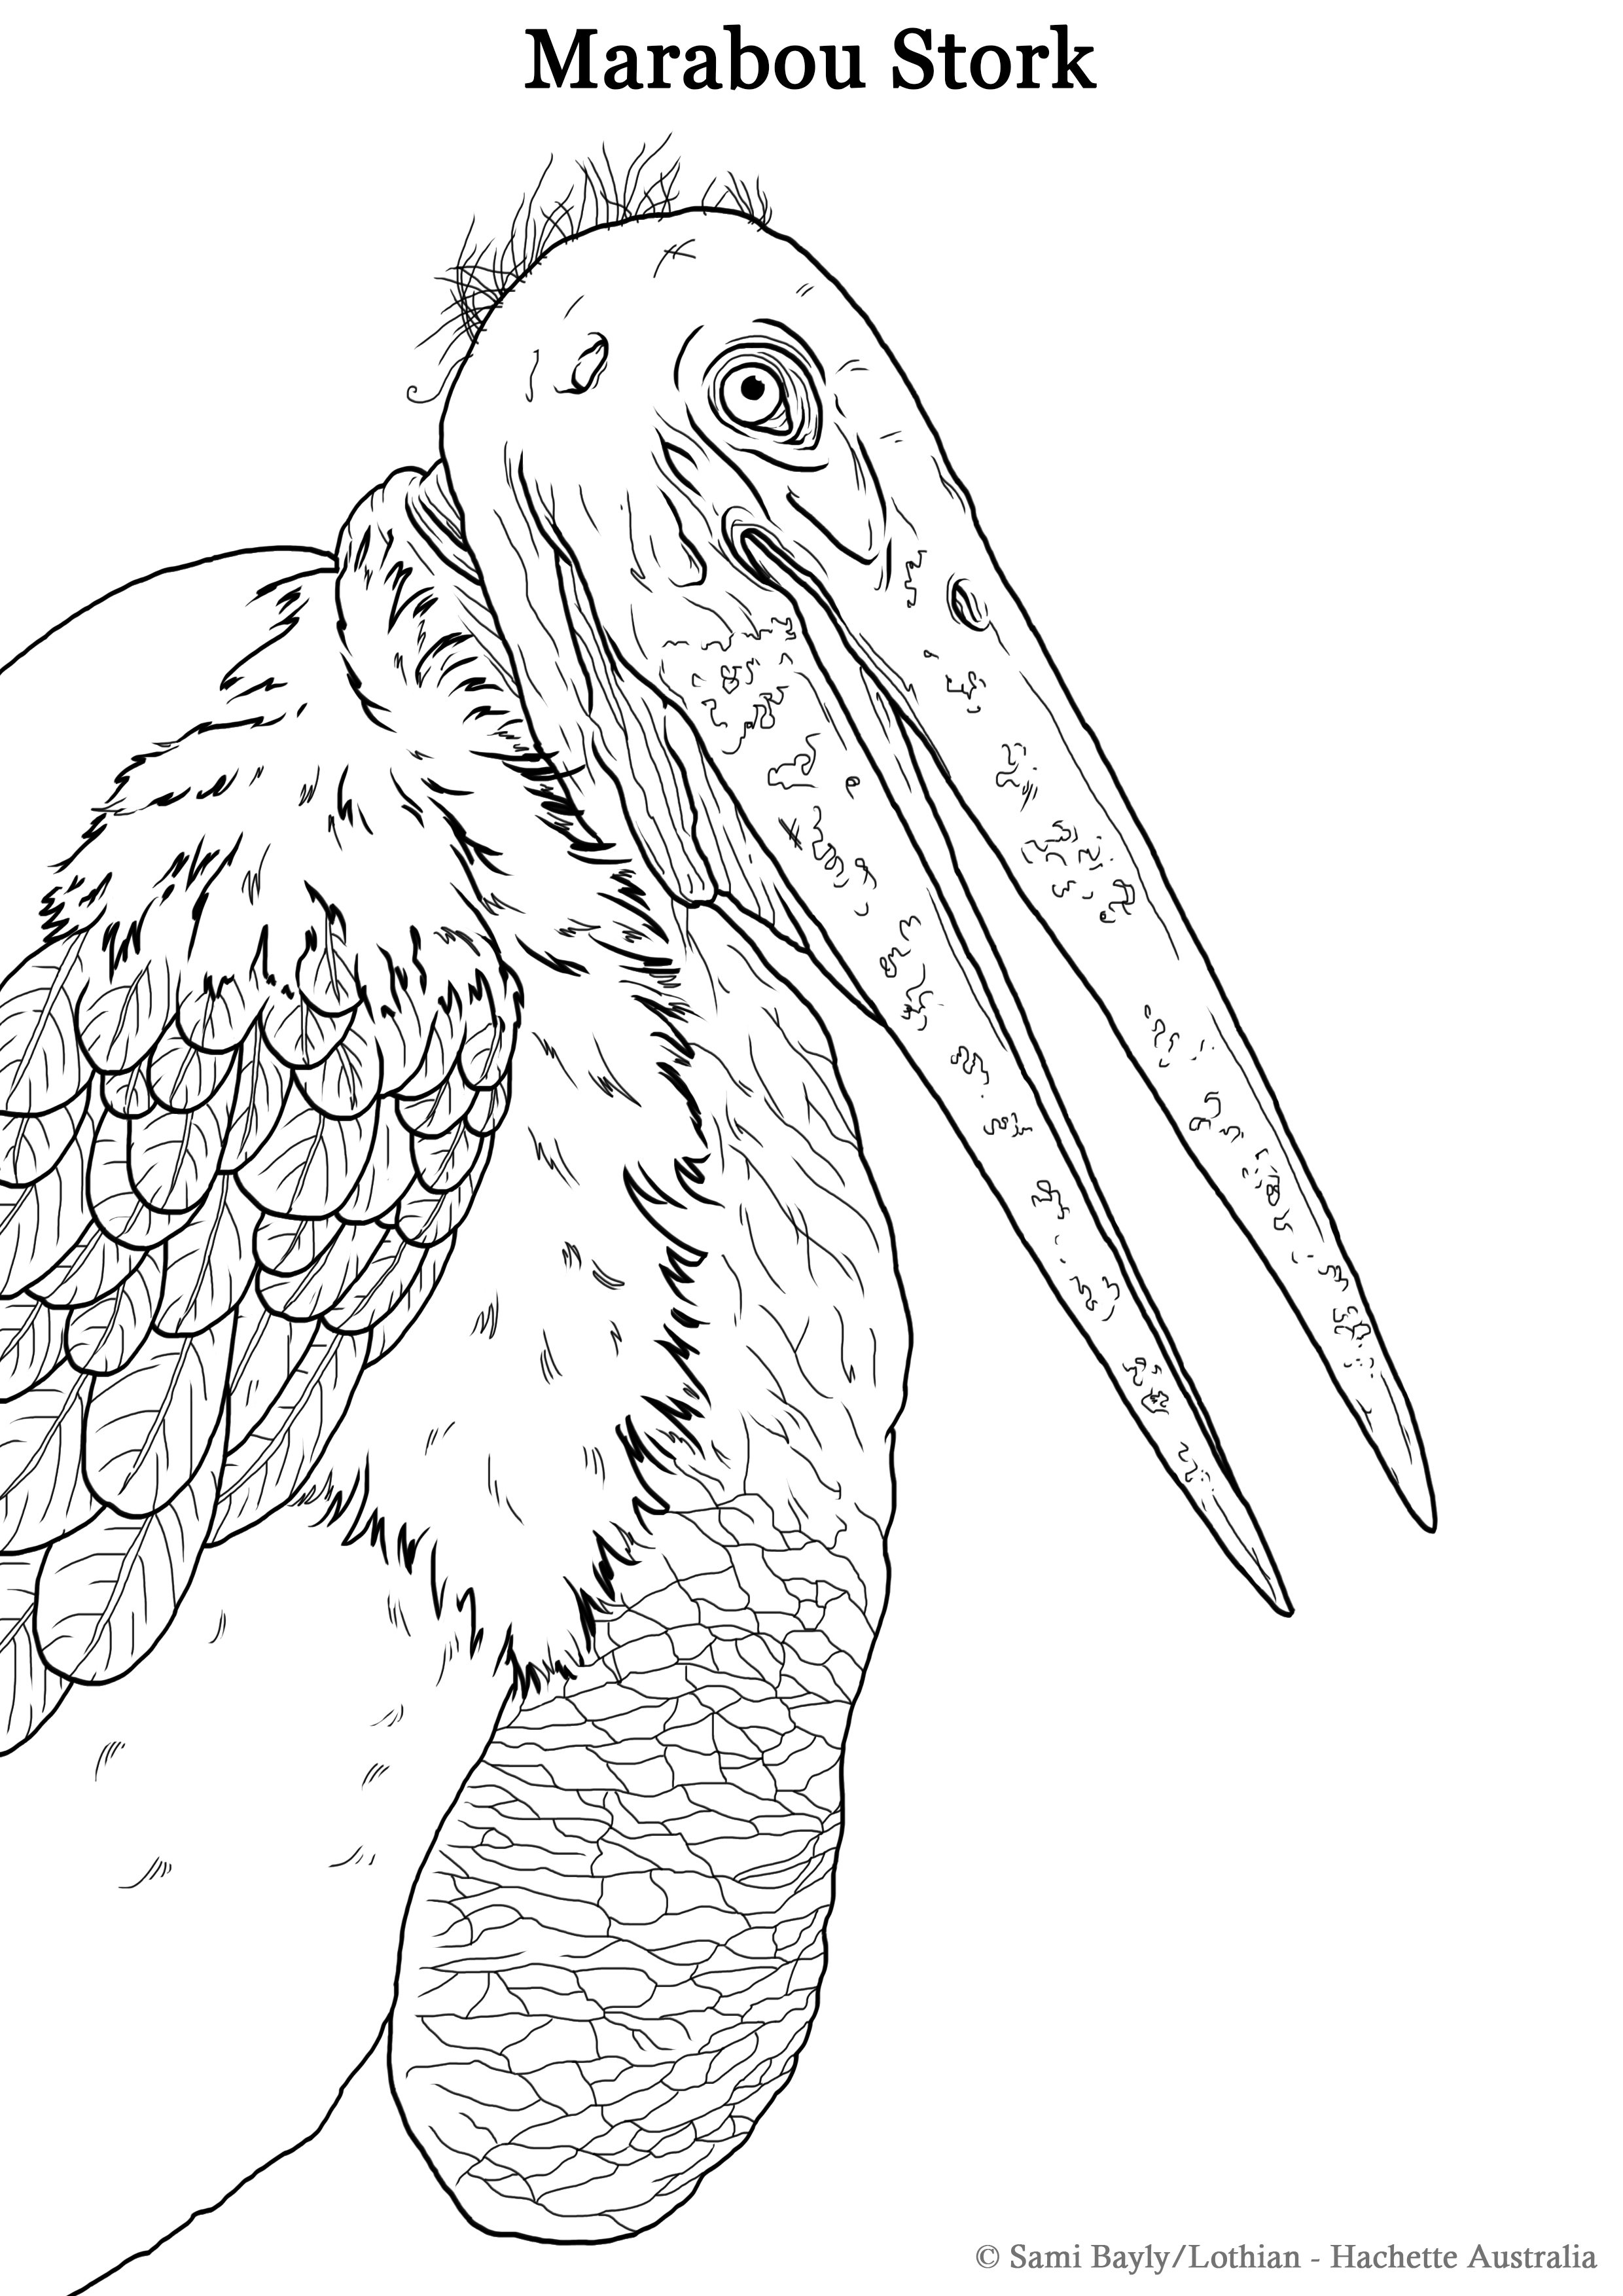 Marabou Stork Line Drawing.jpg